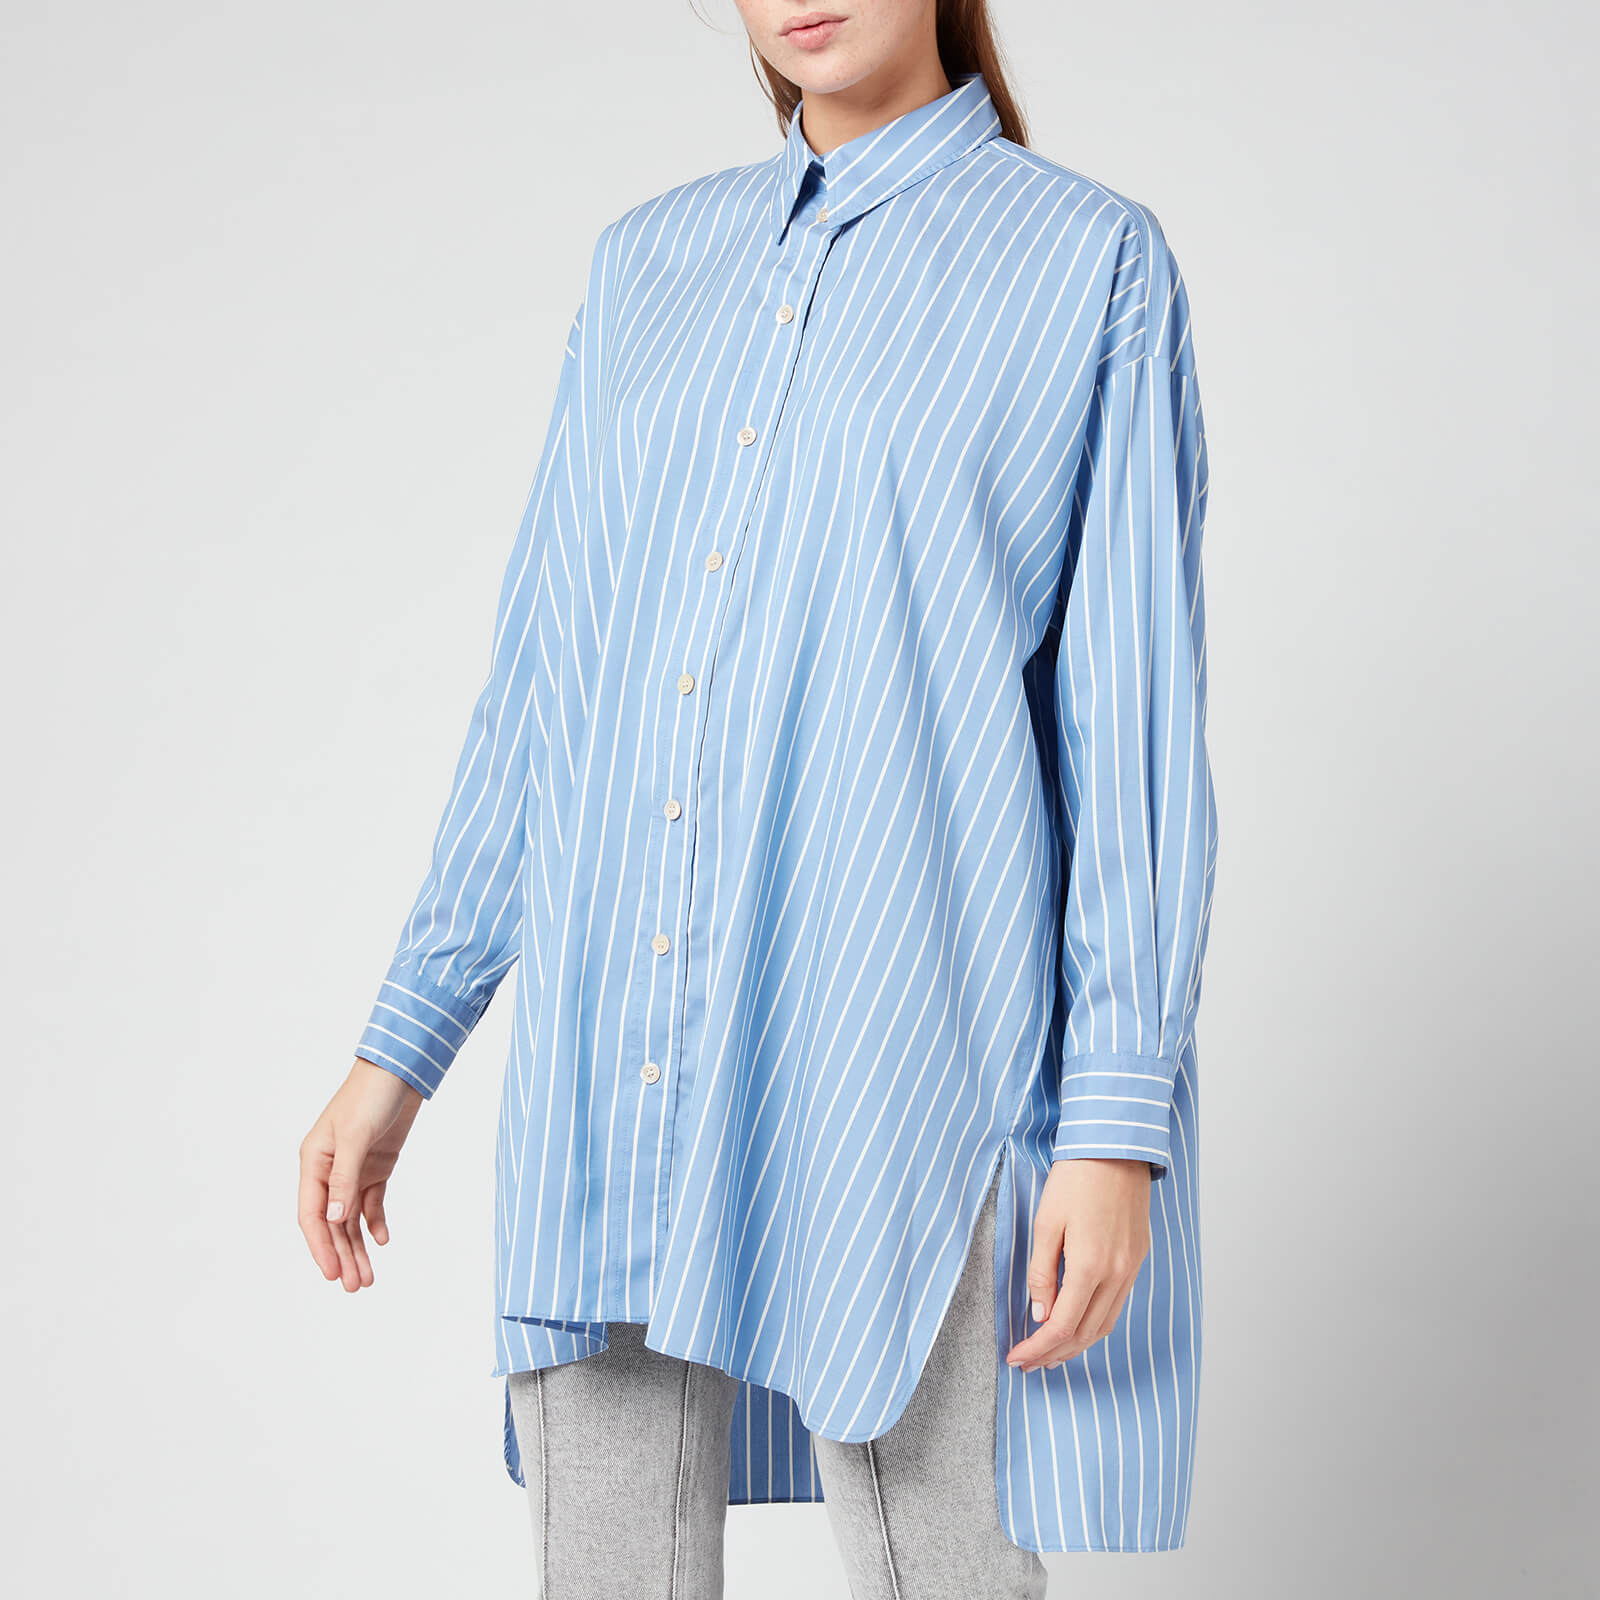 Isabel Marant Women's Sacali Shirt - Blue - FR36/UK8